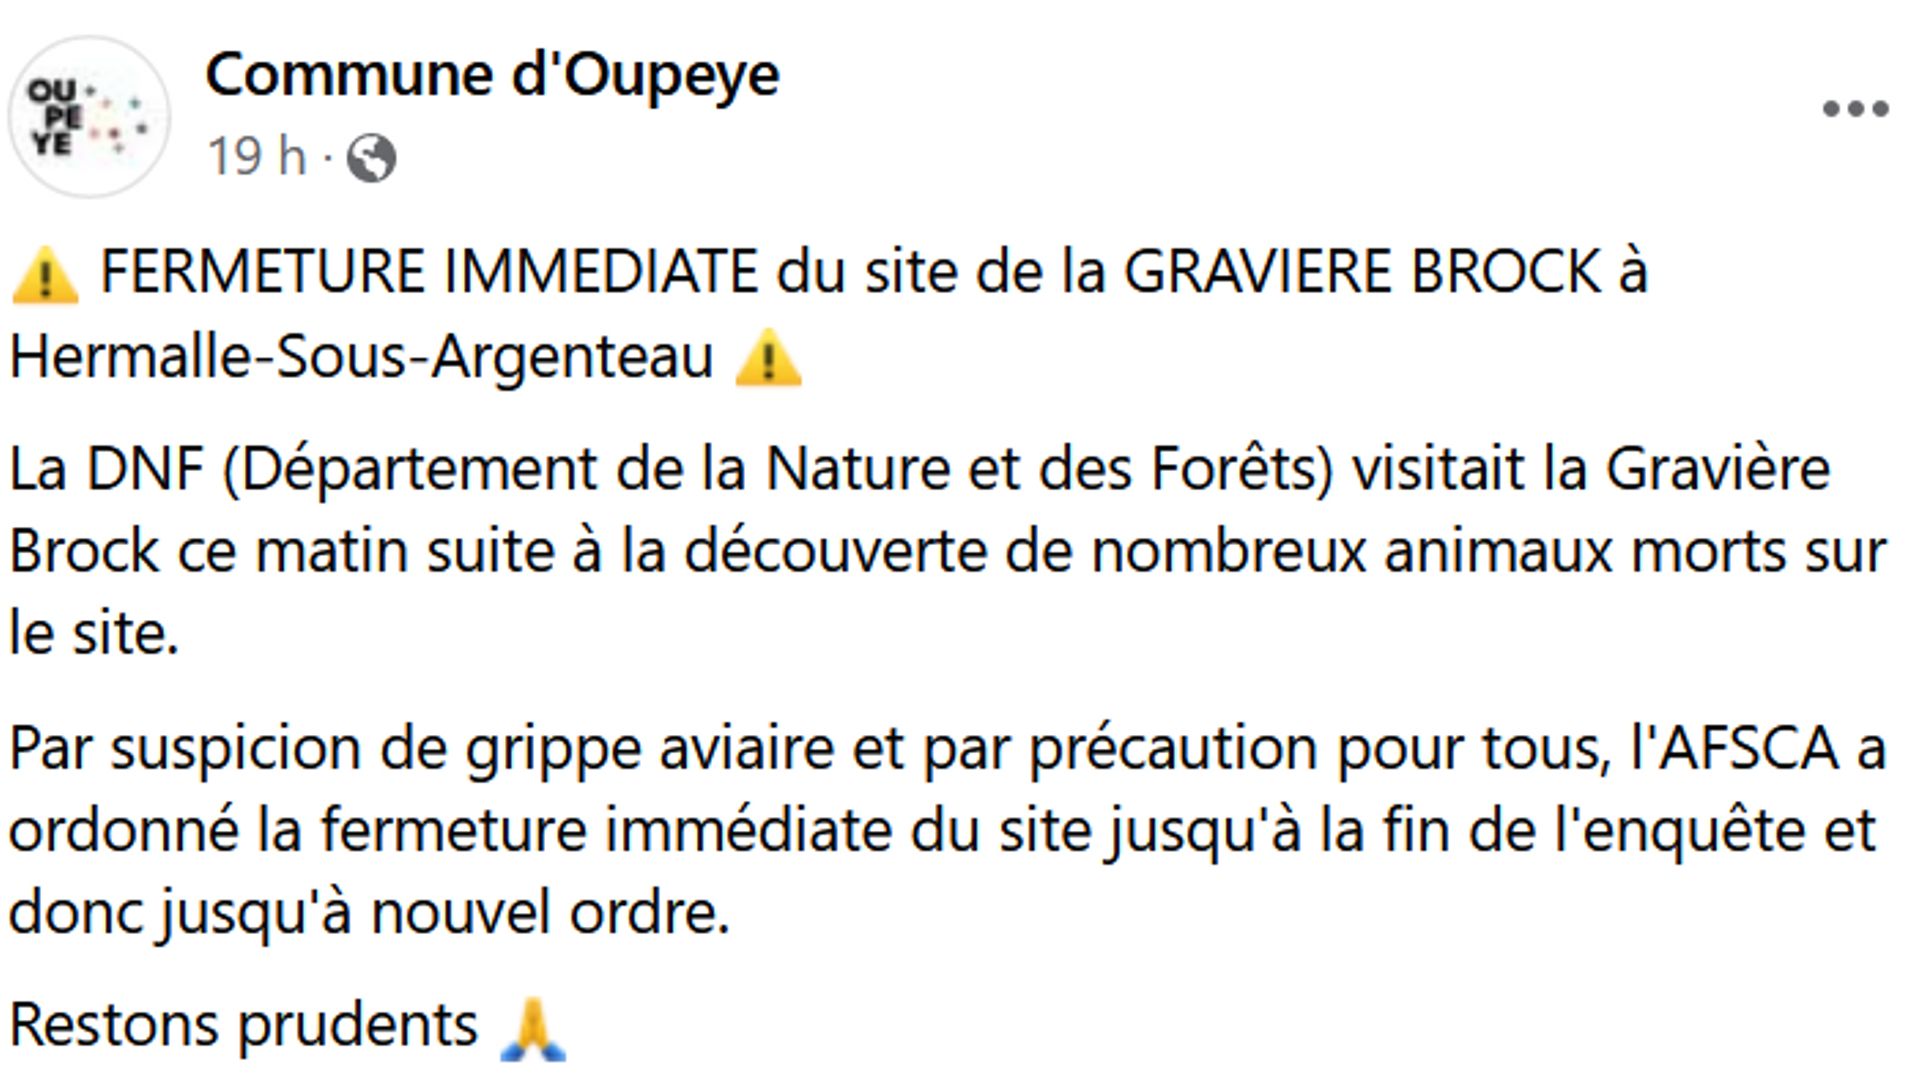 La commune d'Oupeye annonçait hier la fermeture du site de la gravière via sa page Facebook.